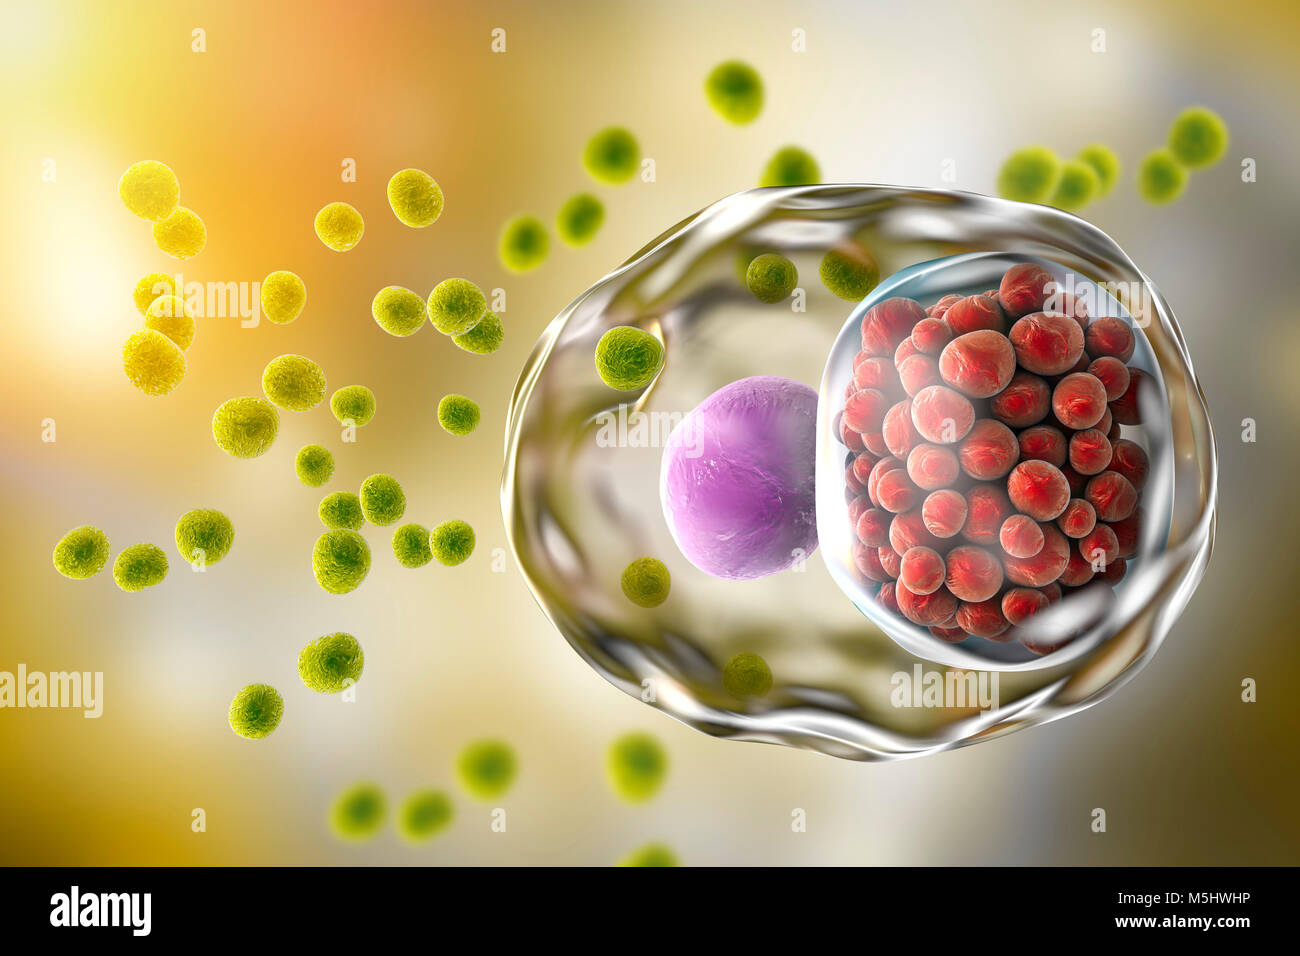 Chlamydia trachomatis Bakterien. Computer zeigt zwei Lebensphasen von Chlamydia: elementare Einrichtungen (Extrazellulären nicht-Multiplikation ansteckende Stadium, kleine grüne Kugeln) und eine Aufnahme aus einer Gruppe von Chlamydia reticulate Körper (intrazelluläre Multiplikation Bühne, kleinen roten Kugeln) in der Nähe des Nukleus (violett) einer Zelle. Stockfoto